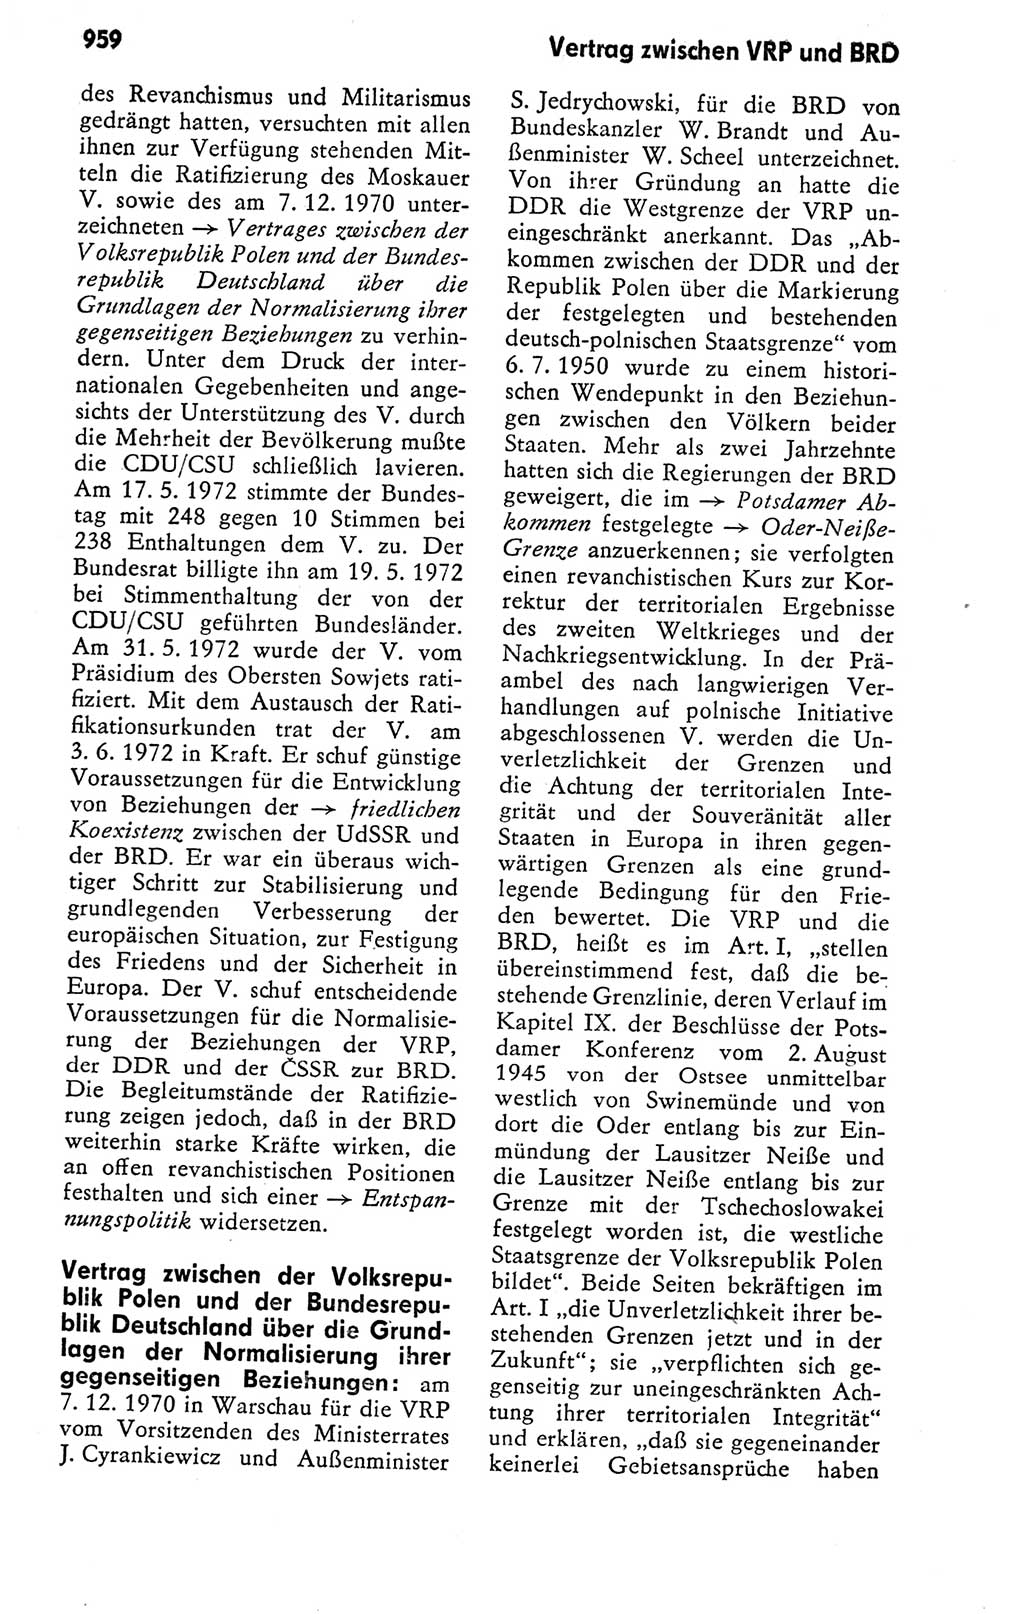 Kleines politisches Wörterbuch [Deutsche Demokratische Republik (DDR)] 1978, Seite 959 (Kl. pol. Wb. DDR 1978, S. 959)